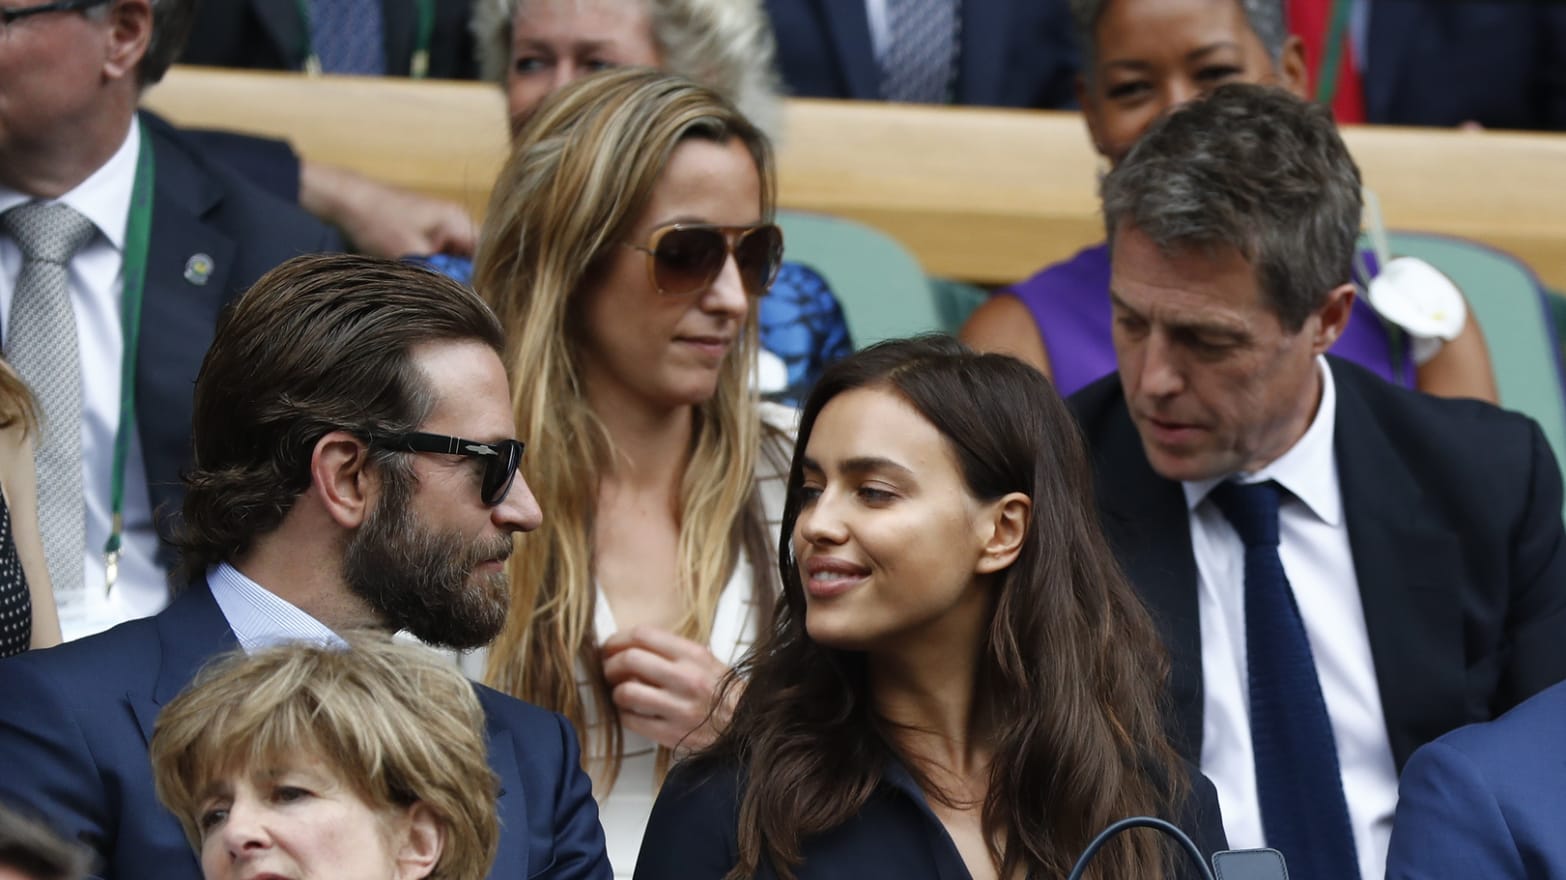 Bradley Cooper wants more kids with Irina Shayk